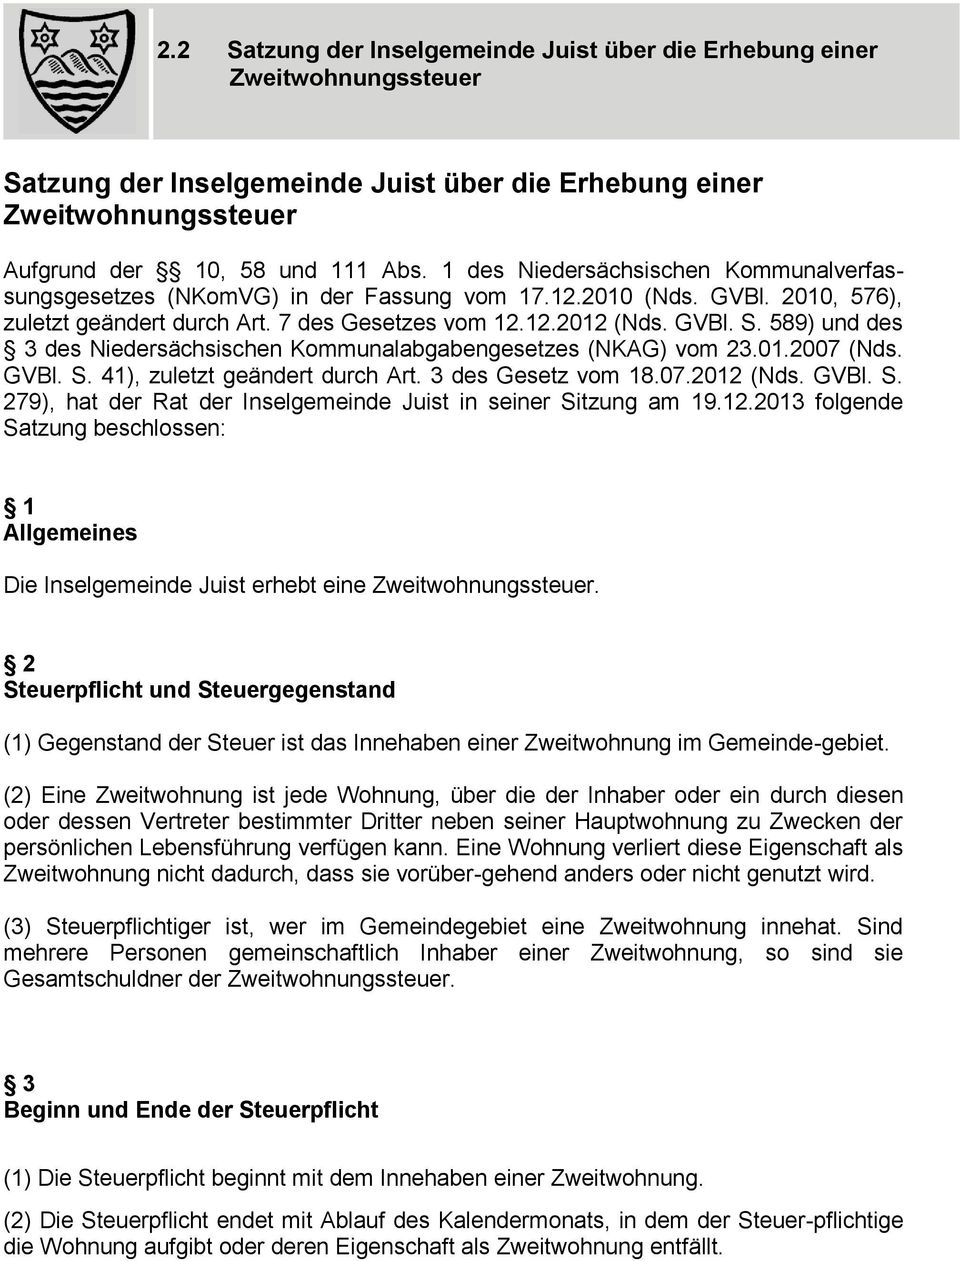 589) und des 3 des Niedersächsischen Kommunalabgabengesetzes (NKAG) vom 23.01.2007 (Nds. GVBl. S. 41), zuletzt geändert durch Art. 3 des Gesetz vom 18.07.2012 (Nds. GVBl. S. 279), hat der Rat der Inselgemeinde Juist in seiner Sitzung am 19.